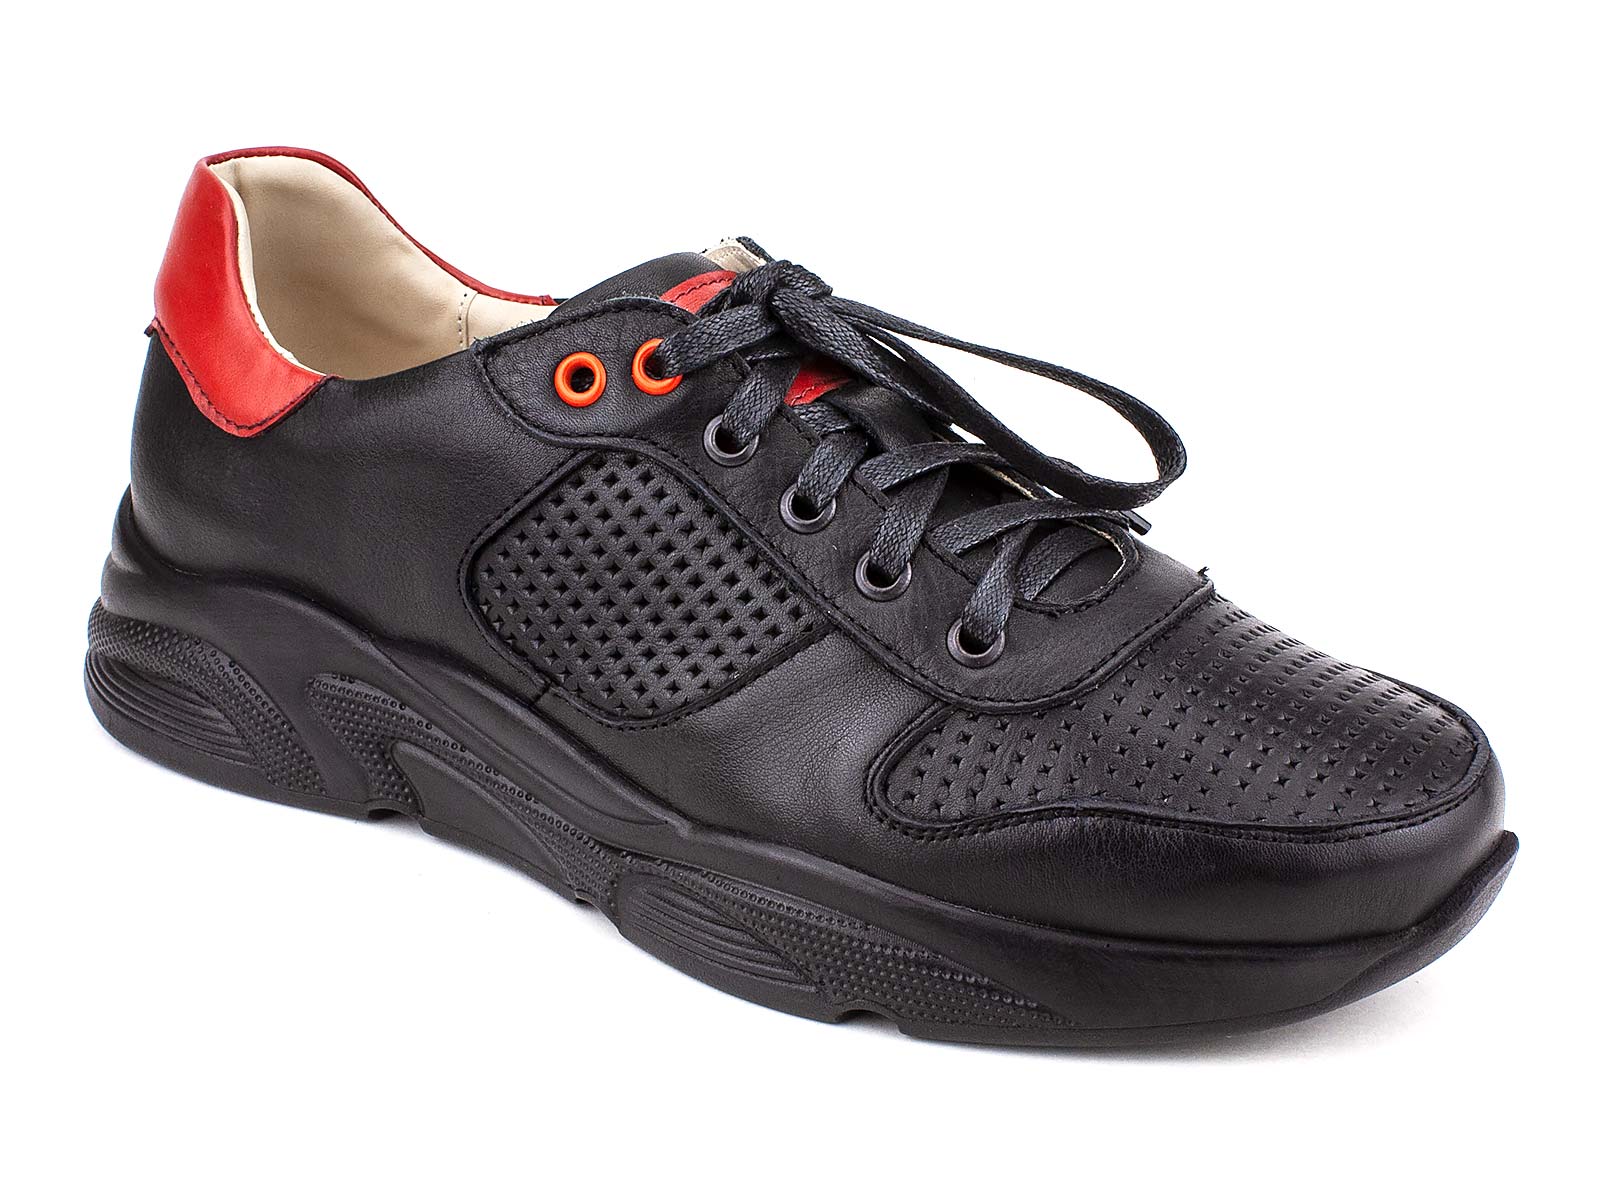 Купить обувь доктору. Dr.Spektor обувь. Туфли женские Dr.Spektor 915 черный. Ортопедическая обувь доктор Спектор для женщин.